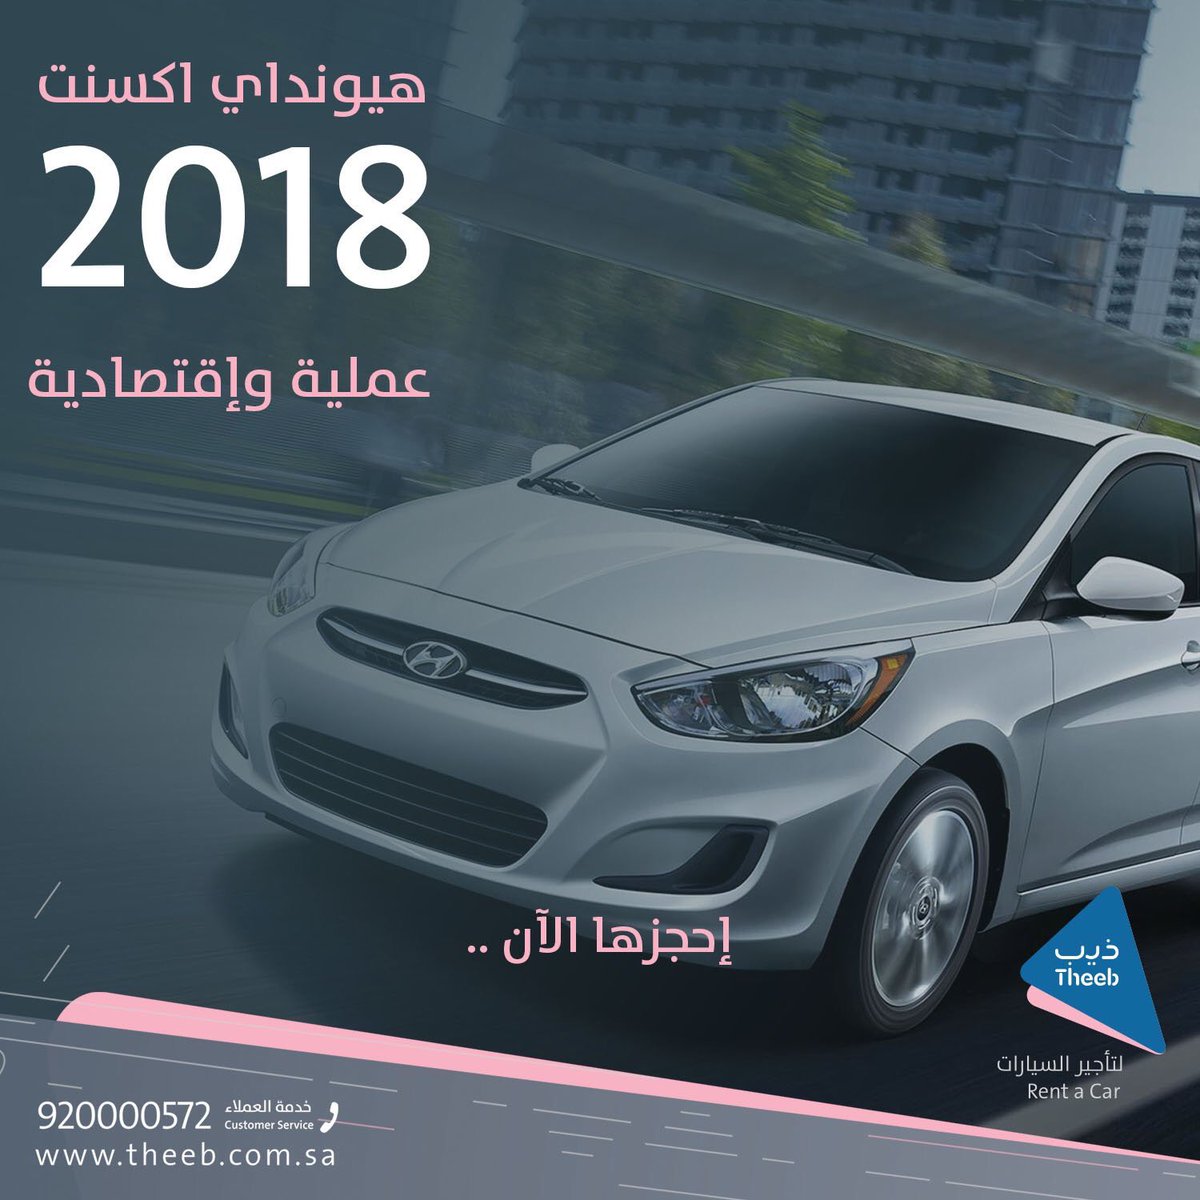 ذيب لتأجير السيارات Sur Twitter Hyundai Accent 2018 عملي واقتصادي احجز الآن من أسطول ذيب لتأجير السيارات سيارات السعودية